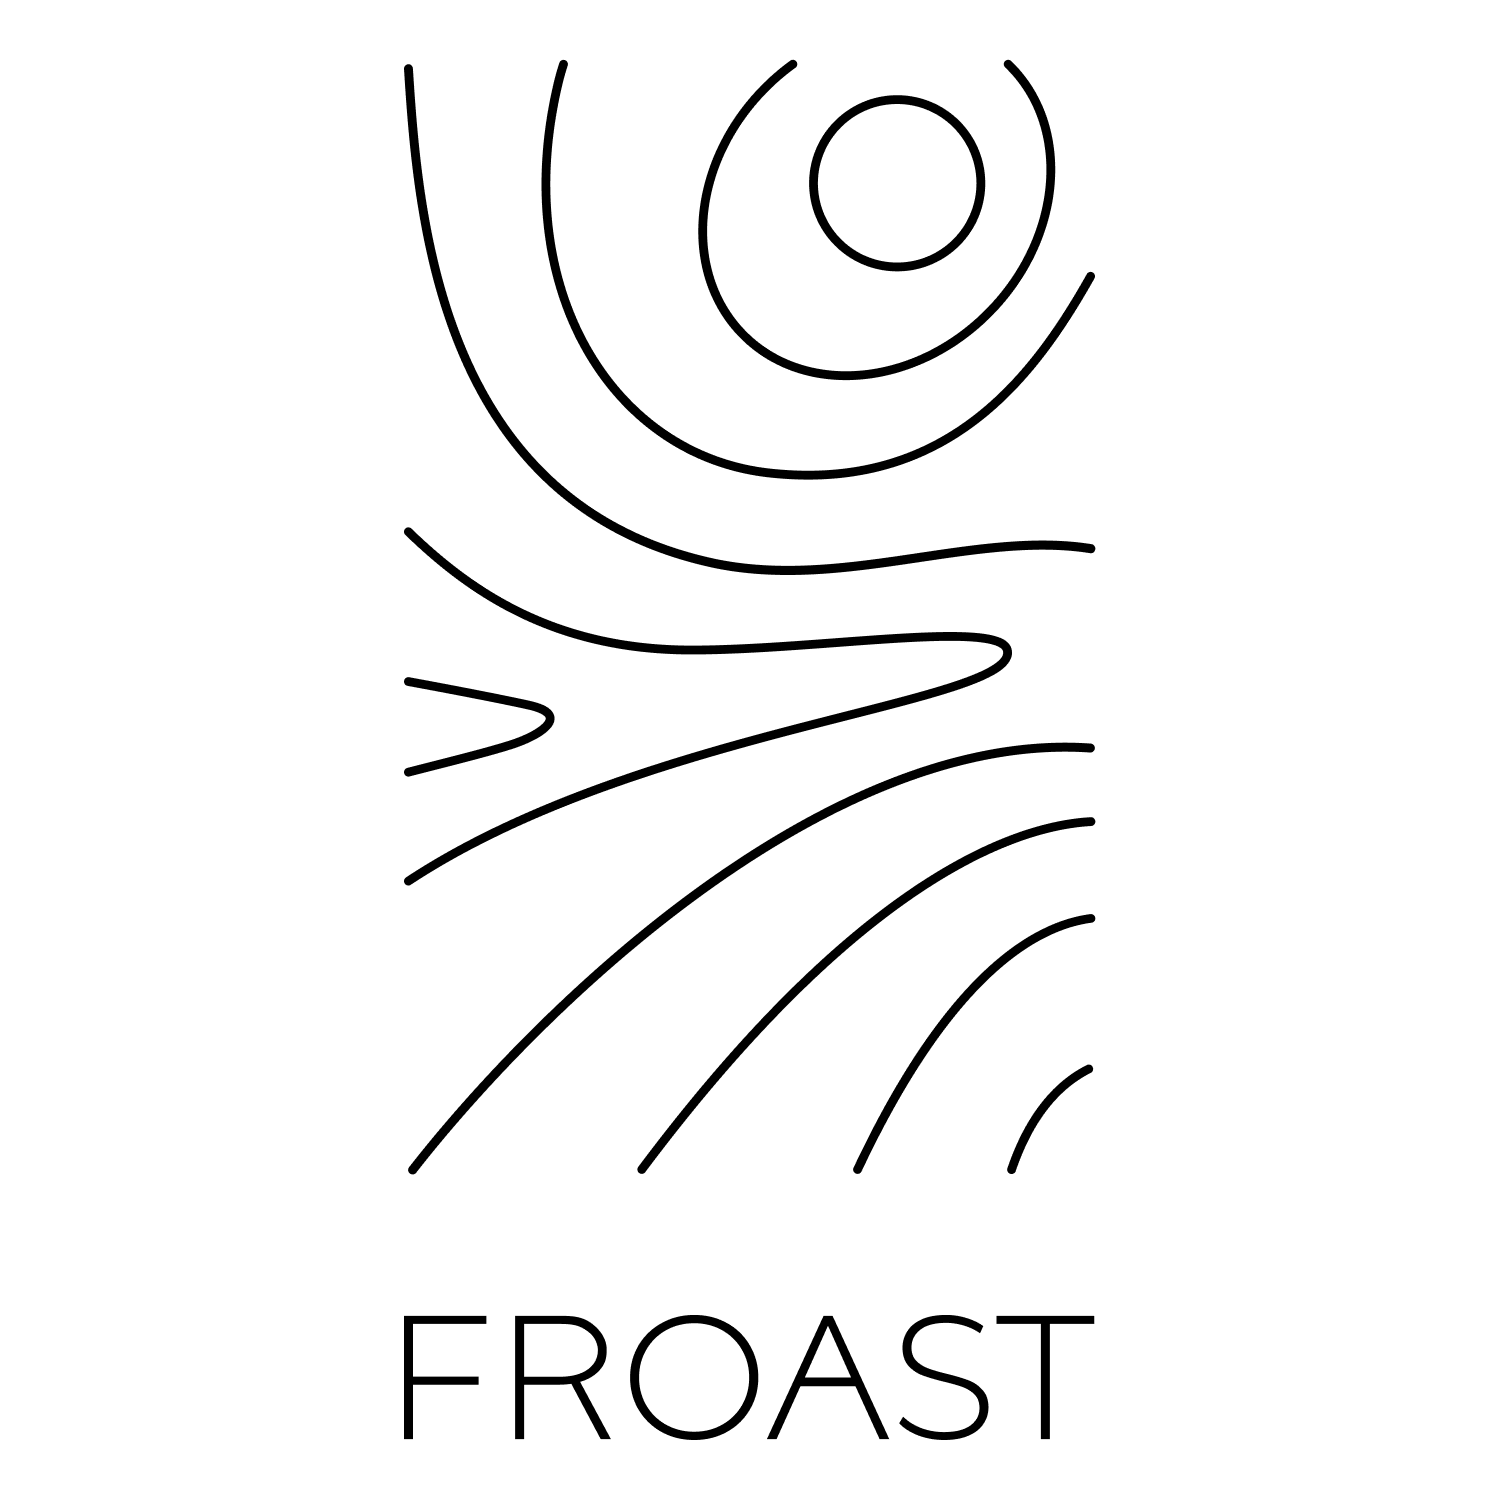 Froast Coffee